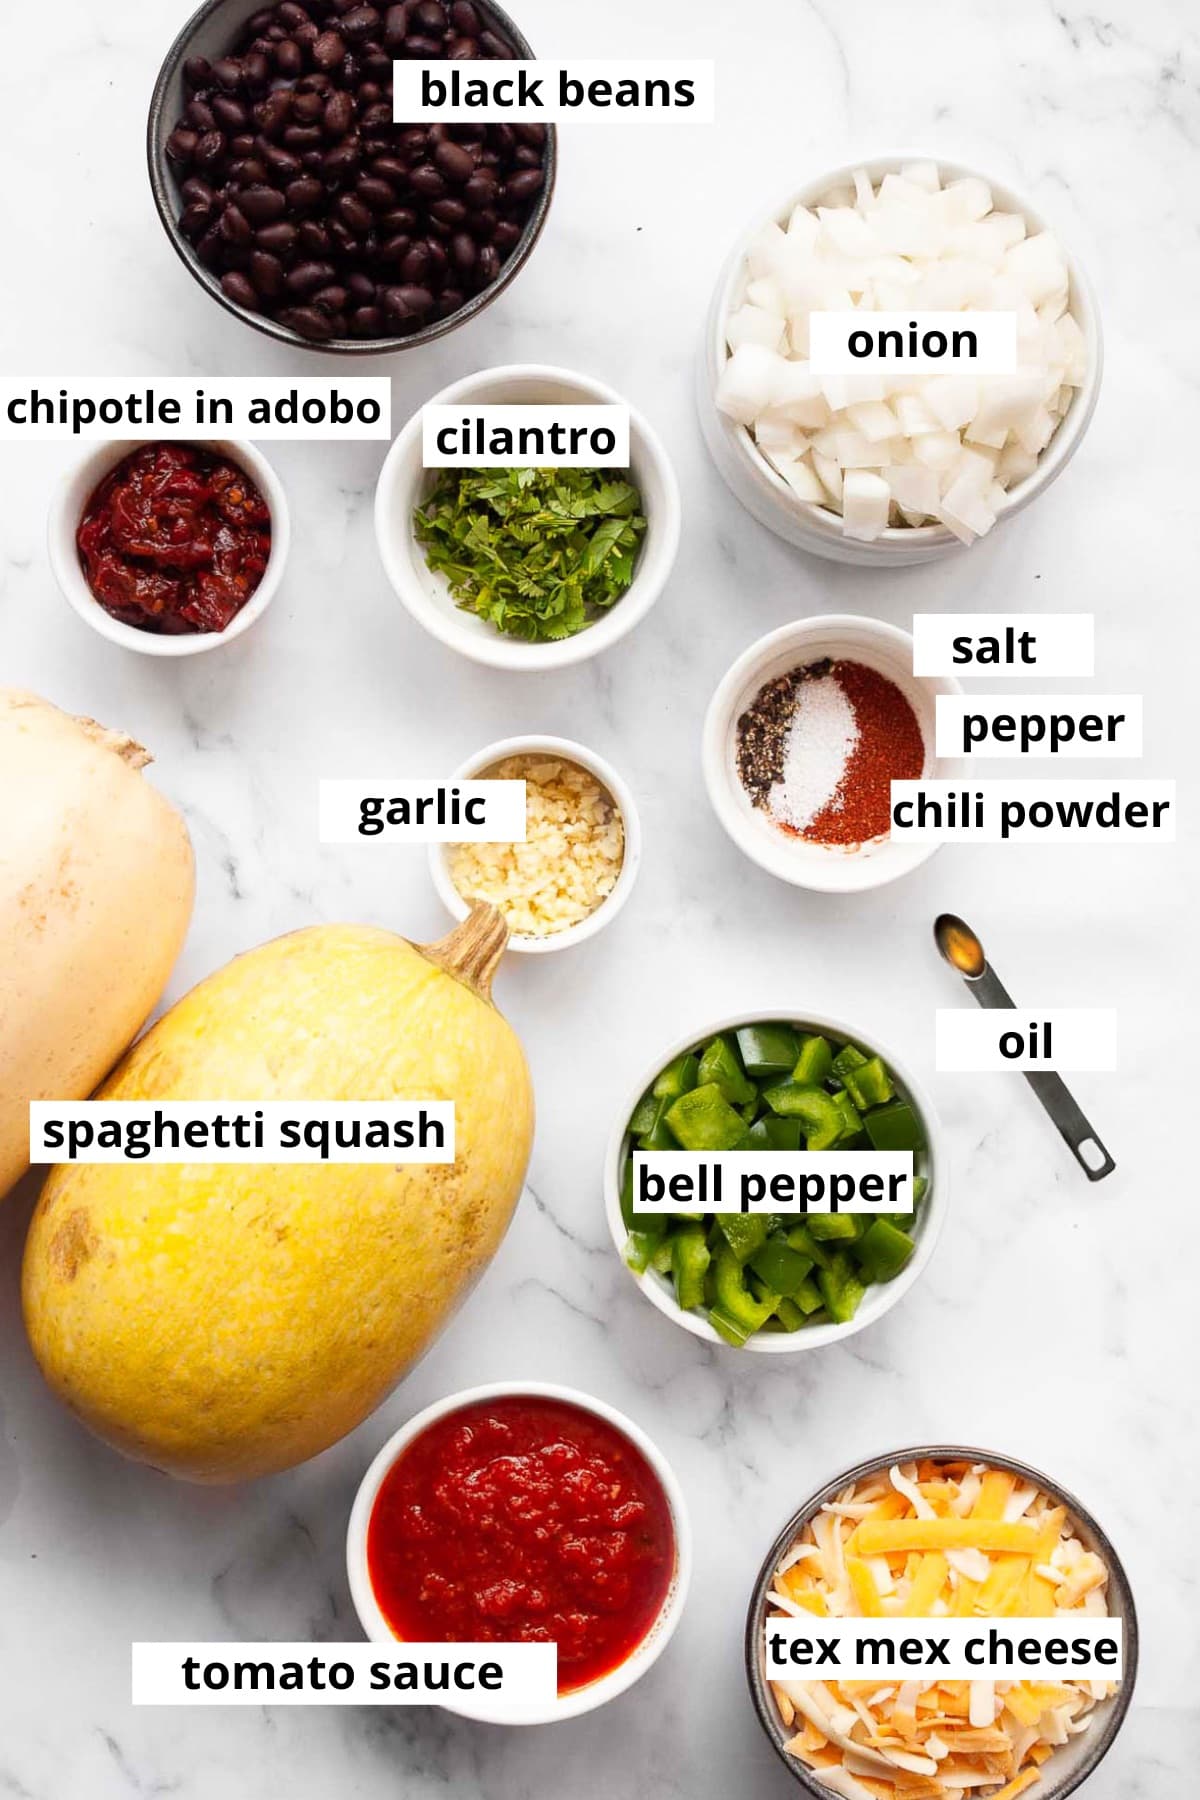 Spaghetti squash, tomato sauce, tex mex cheese, bell pepper, oil, garlic, cilantro, chipotle in adobo, onion, black beans, salt, pepper, chili powder.